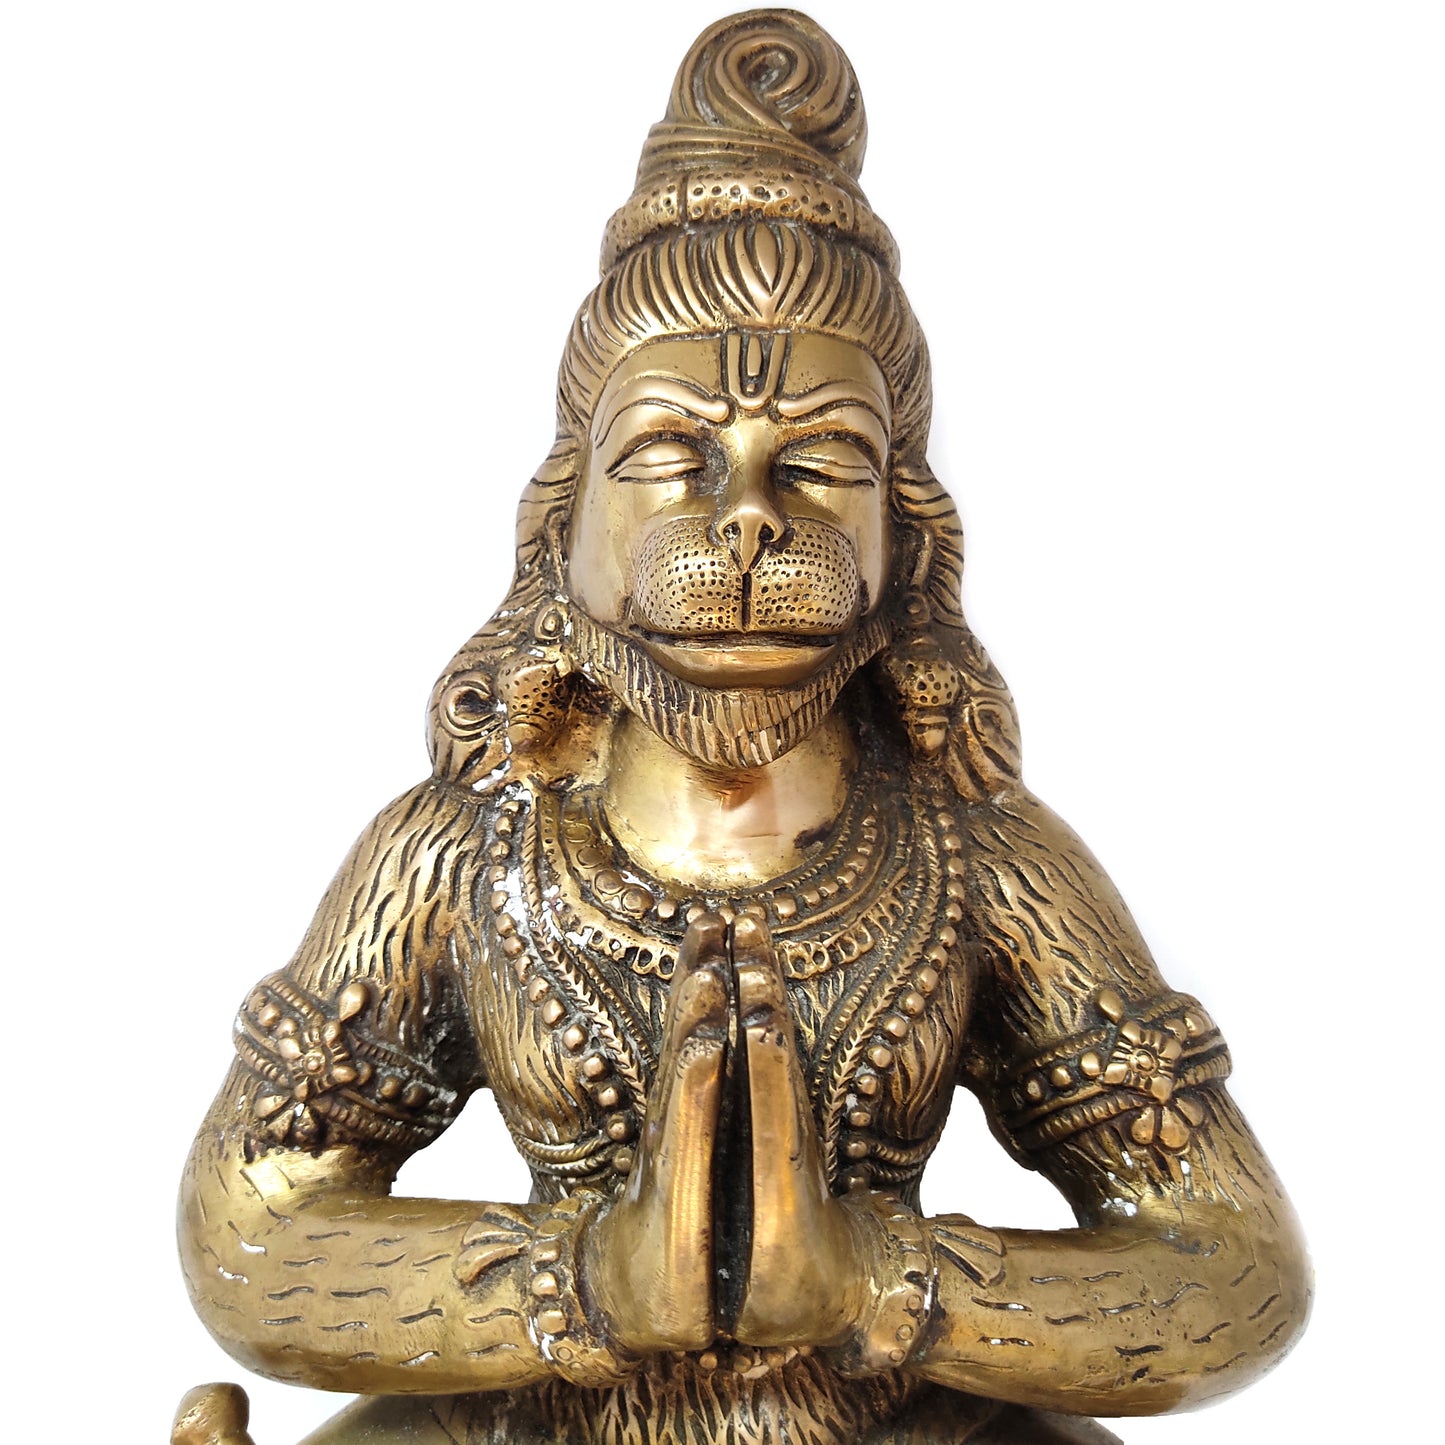 India Hanuman Monkey God Devotee Hanumanji in Meditation Statue Sculpture 17" Tall